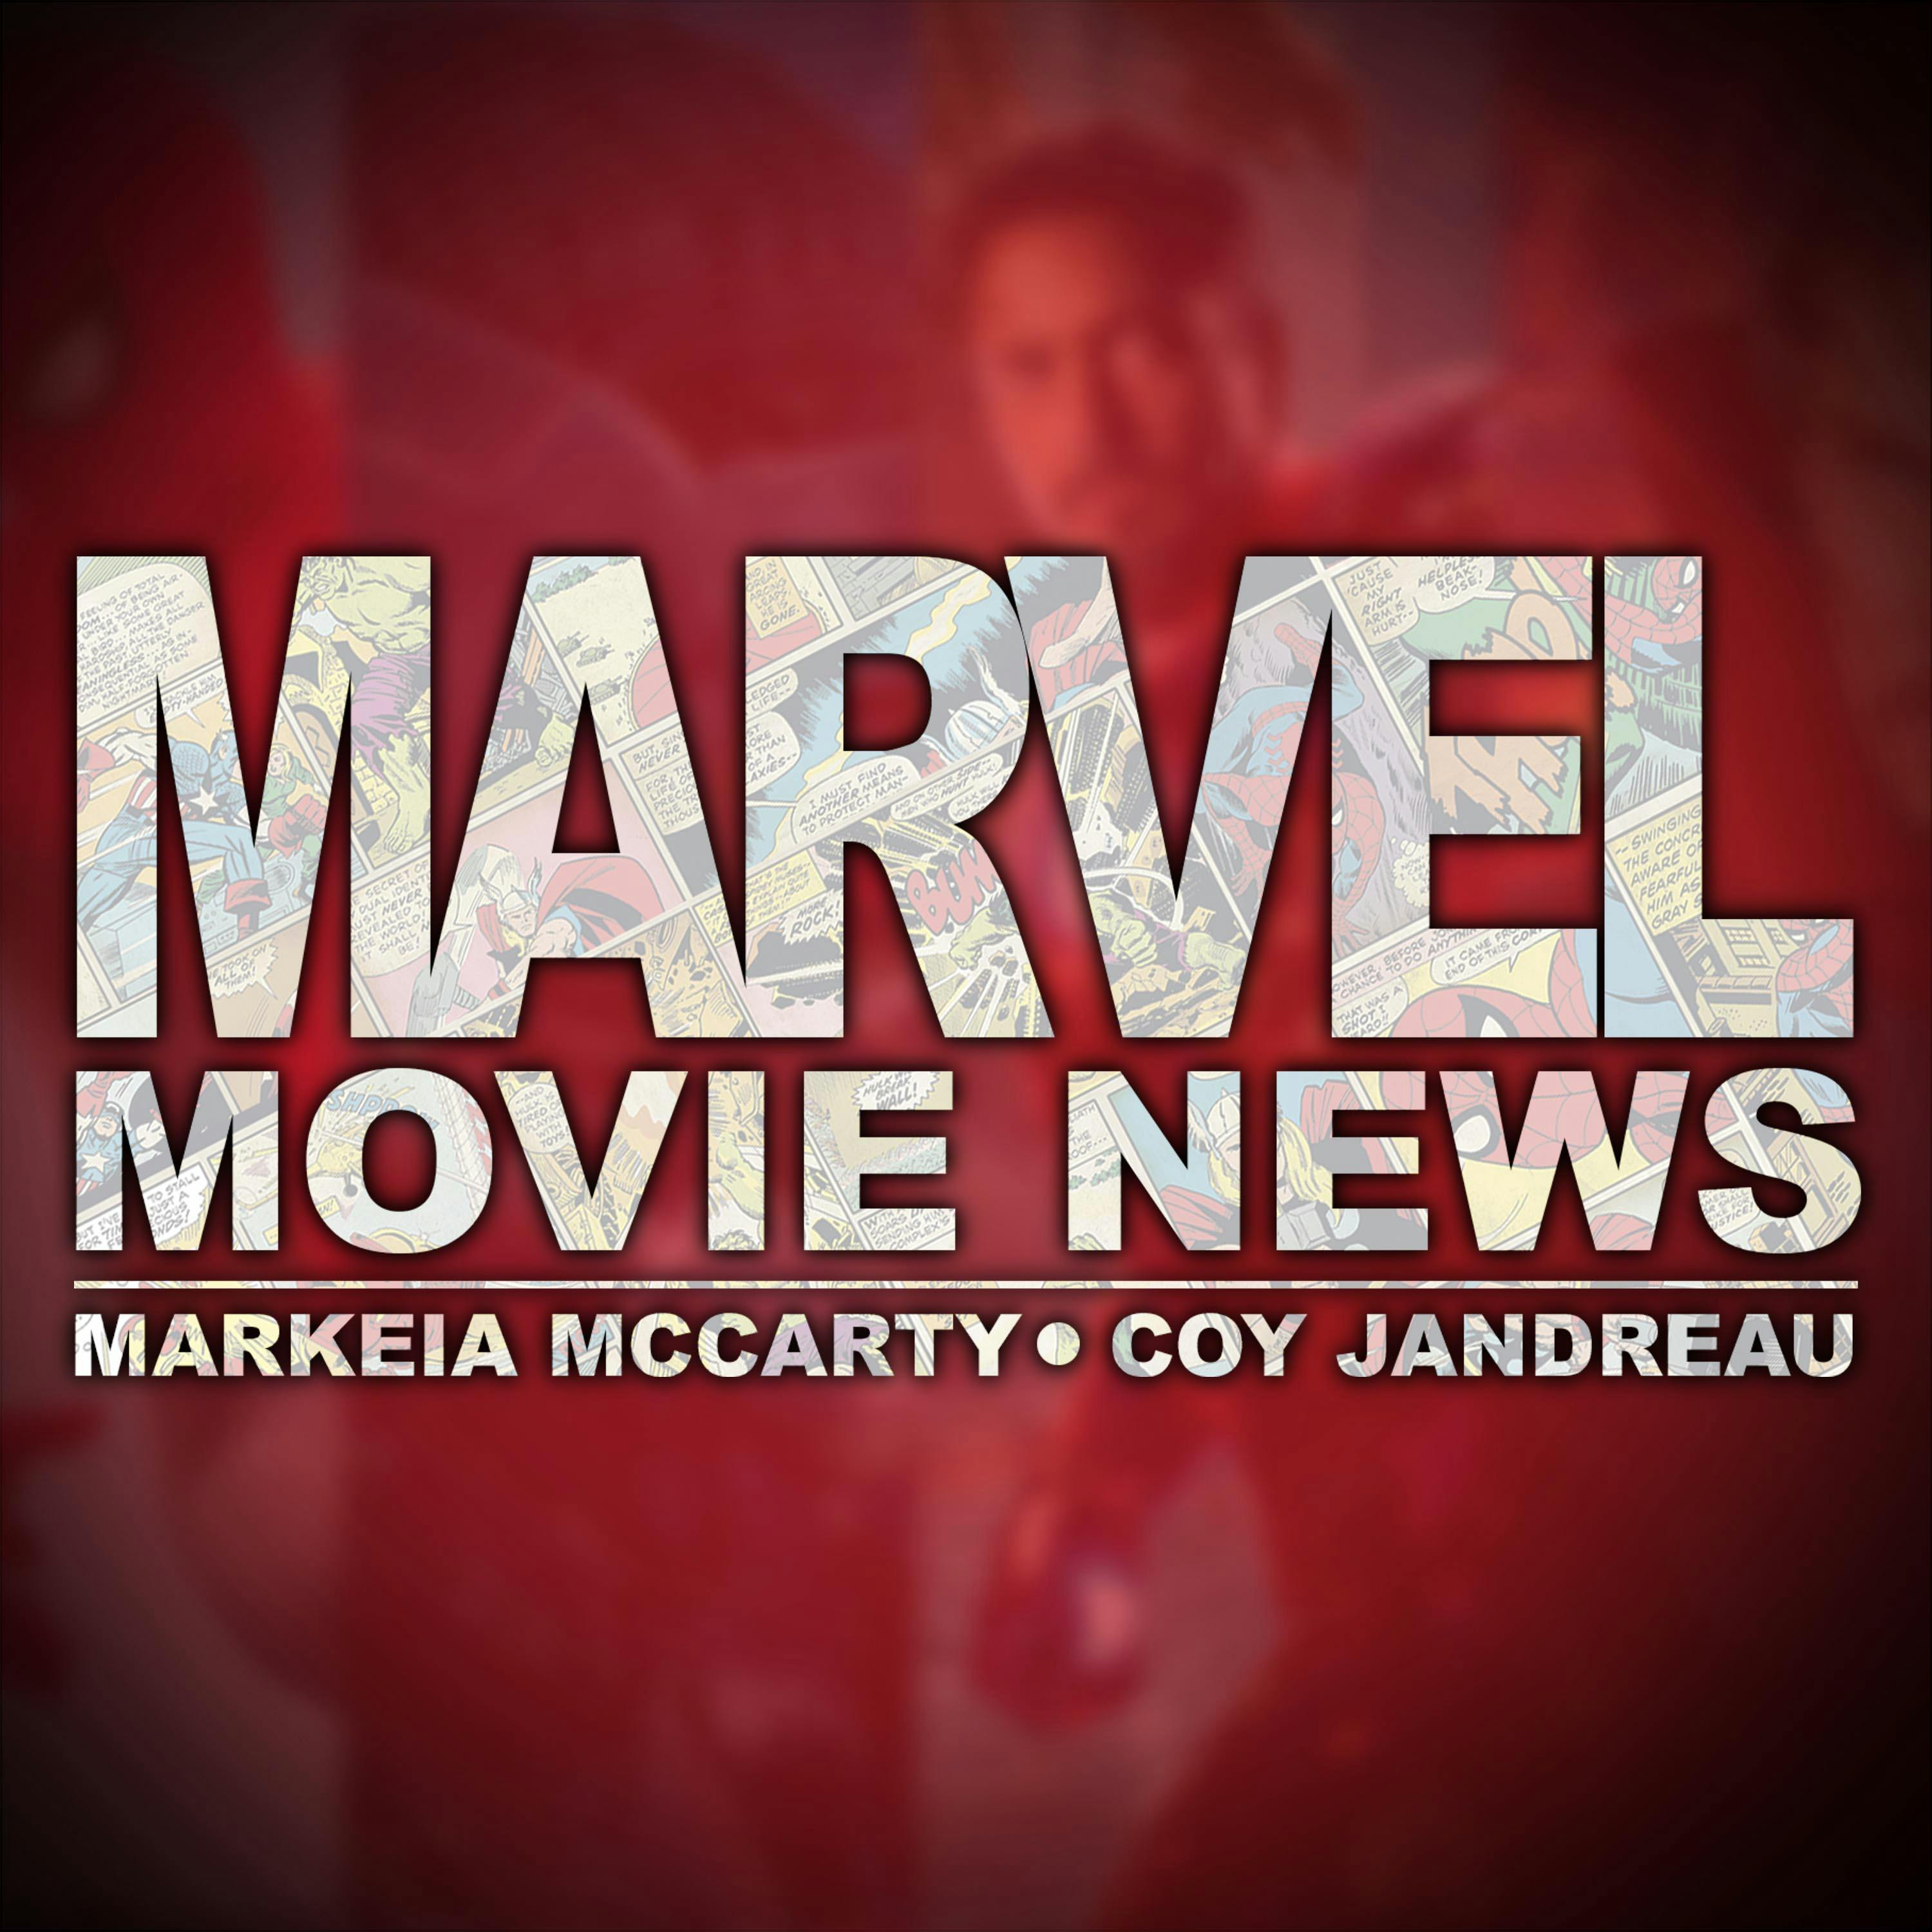 Captain Marvel Trailer, Iron Fist Season 2 Full Spoilers & More! | Marvel Movie News Ep 196